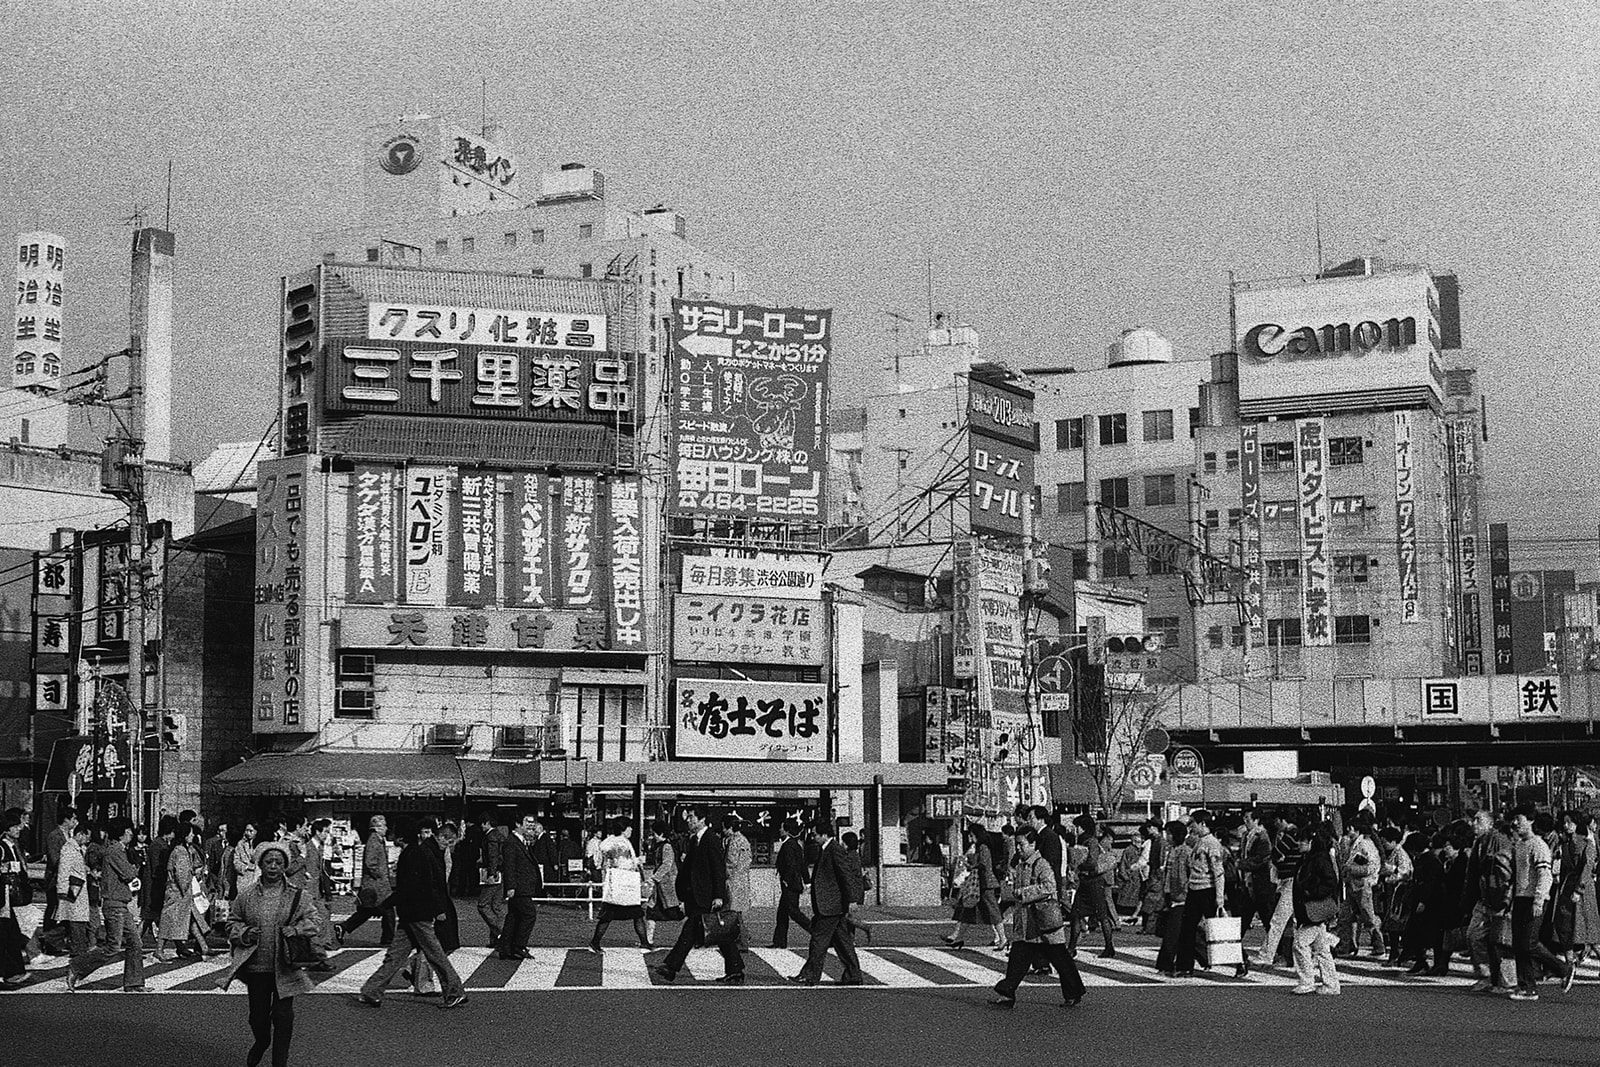 Greg Girard JAL 76 88 pre Japan Tokyo Bubble Era photo interview